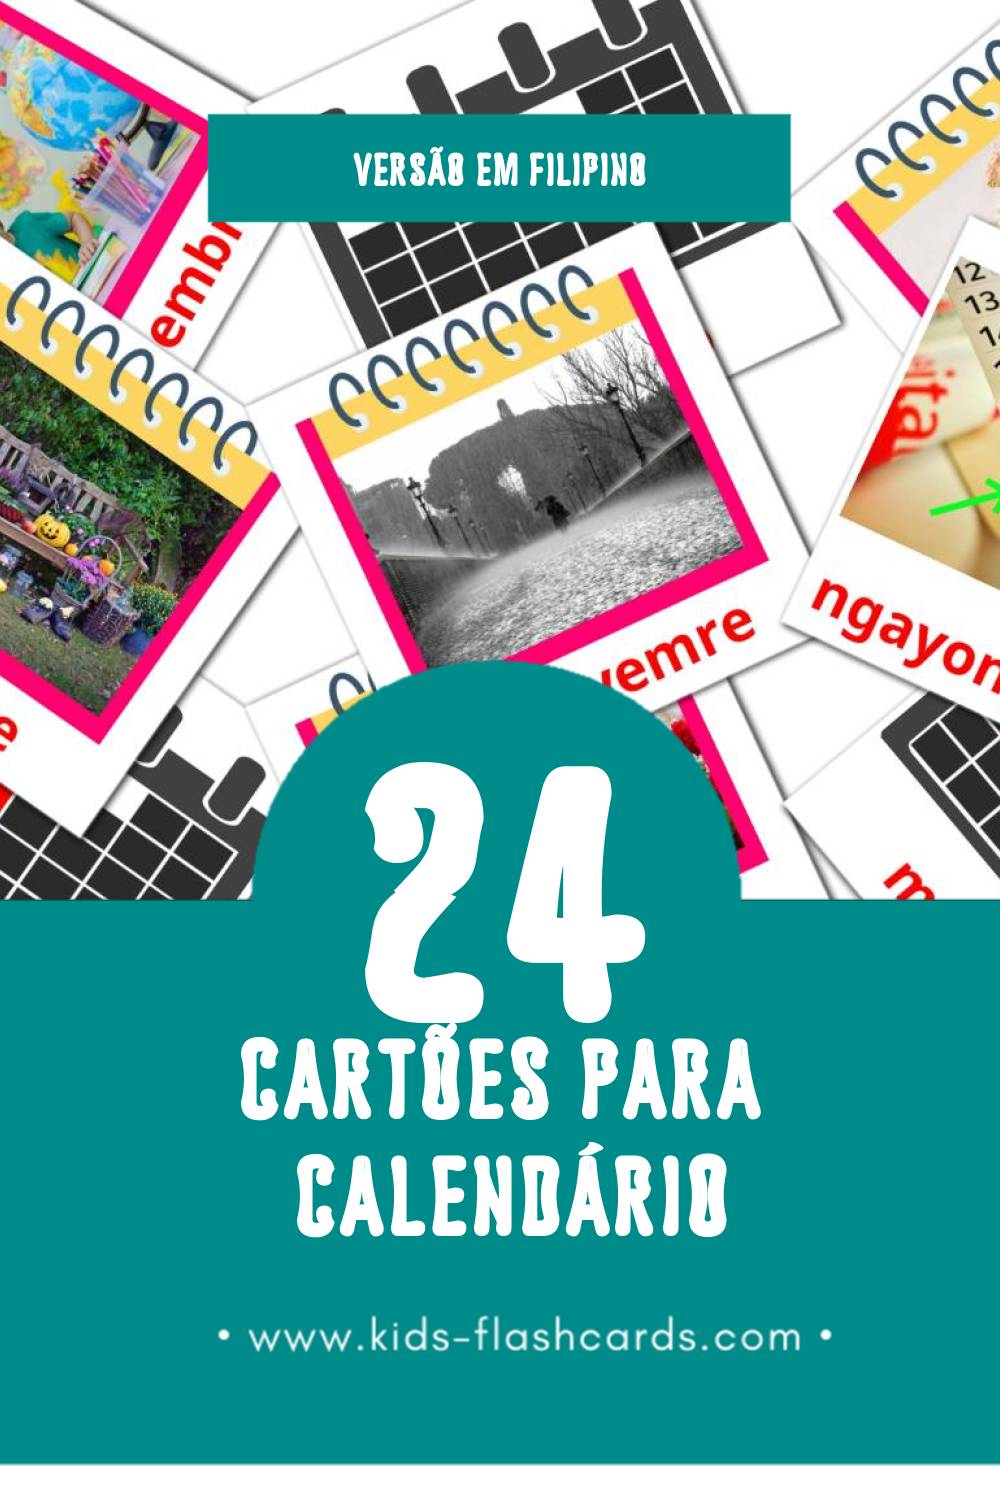 Flashcards de Kalendaryo Visuais para Toddlers (24 cartões em Filipino)